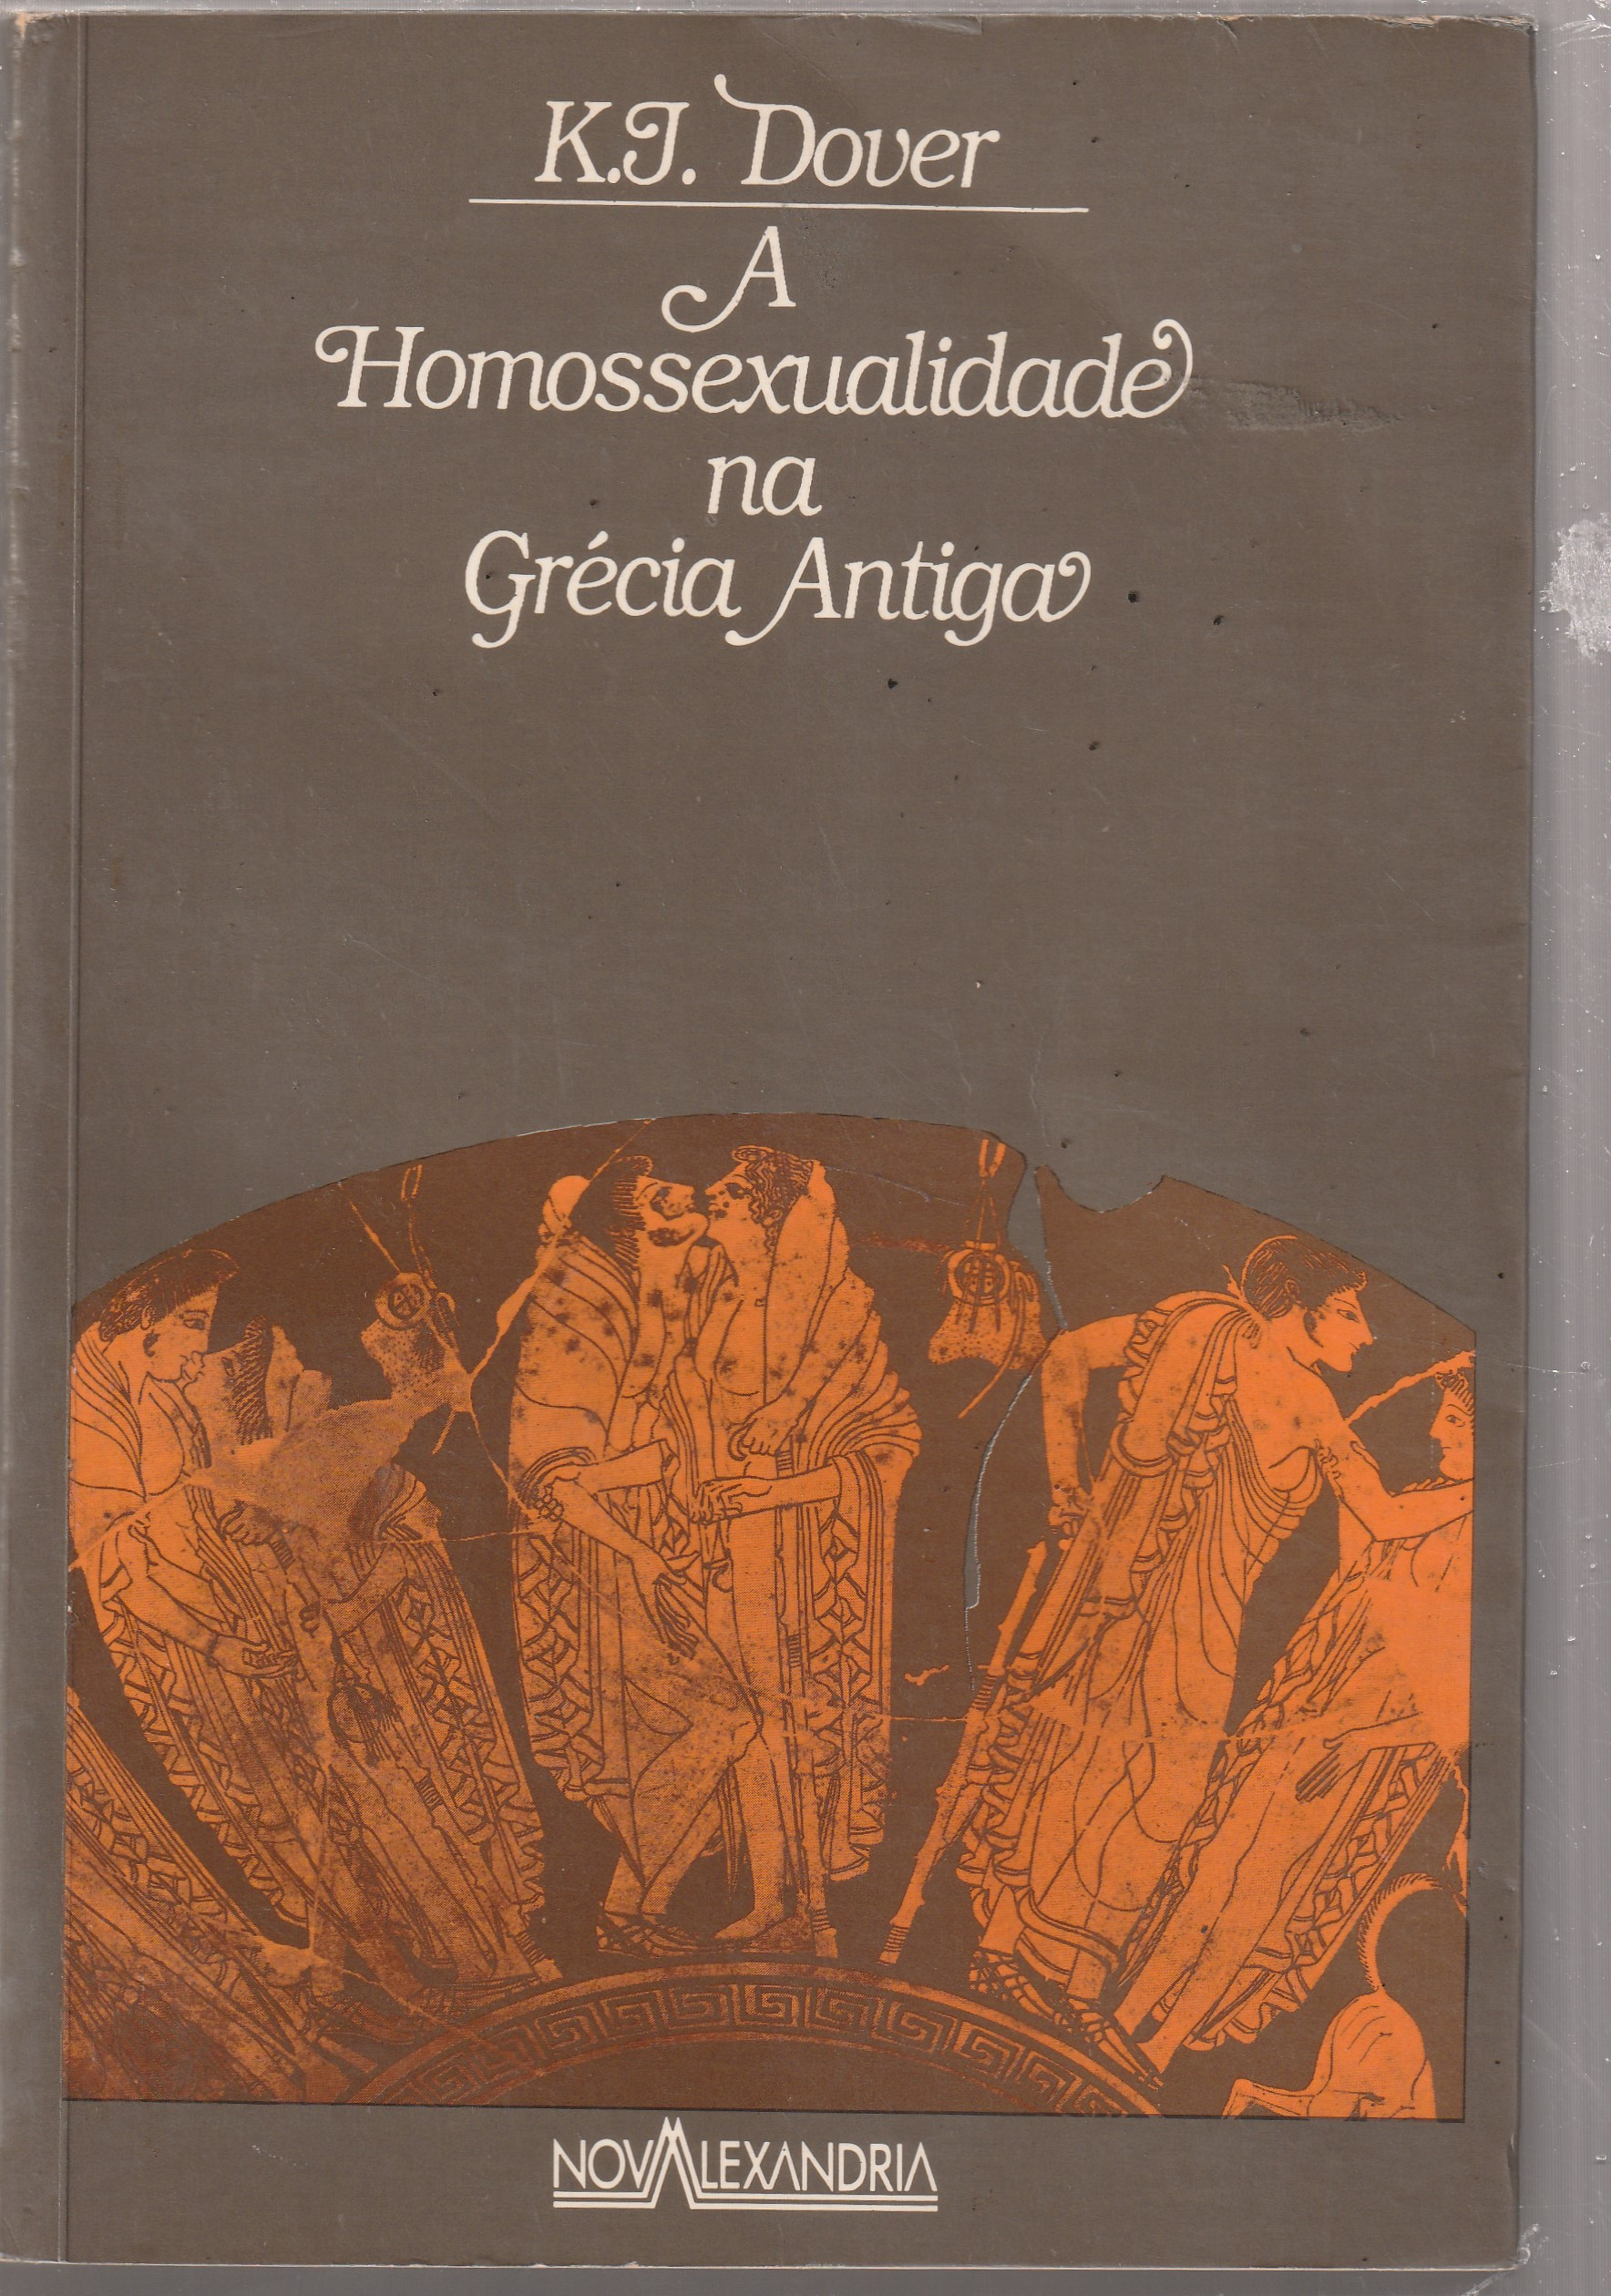 Homossexualidade na Grécia Antiga – Wikipédia, a enciclopédia livre